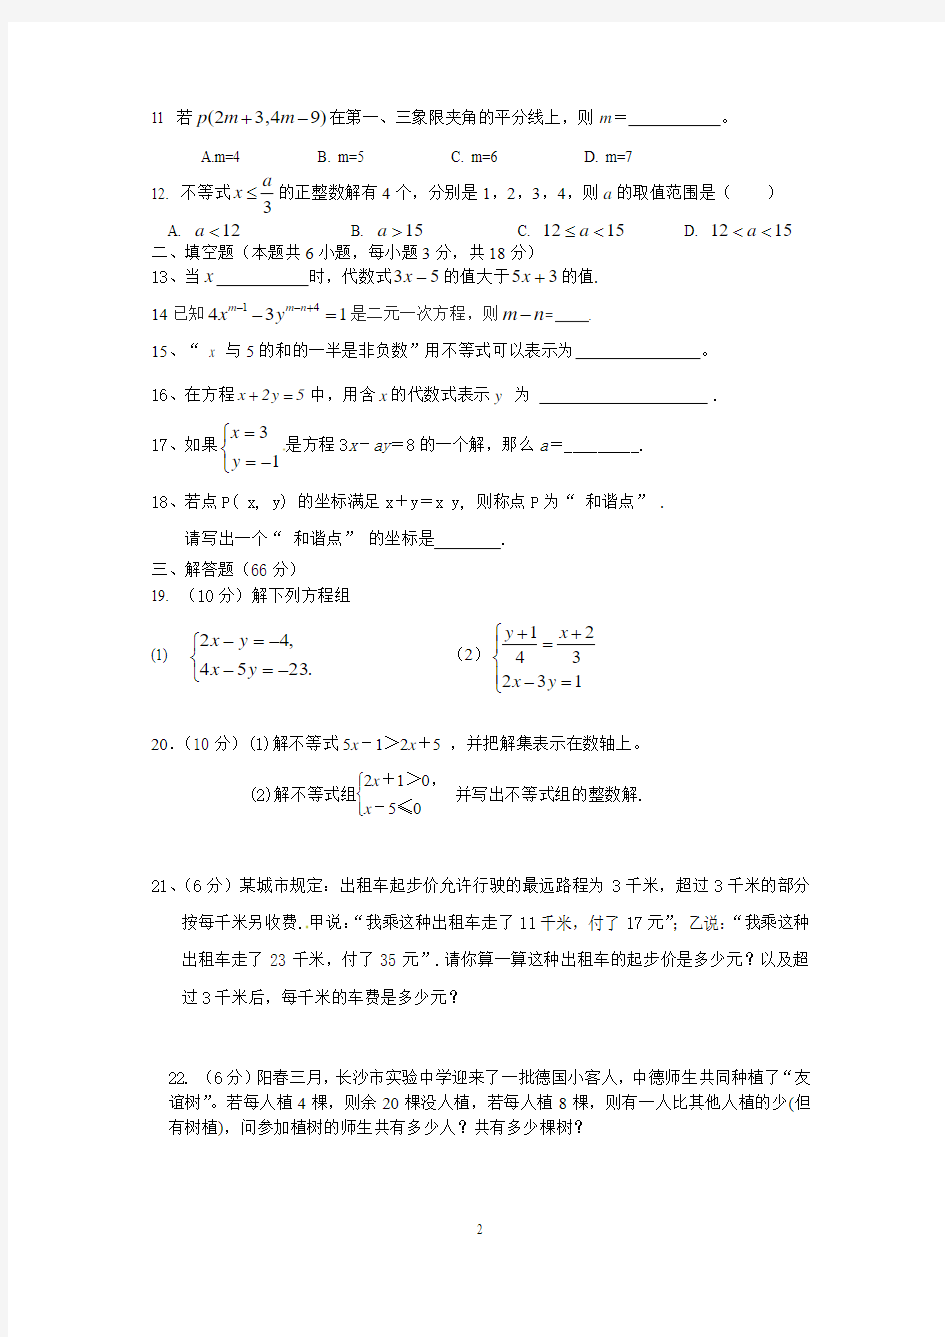 湖南长沙实验中学2014-2015年第二学期期中考试七年级数学卷